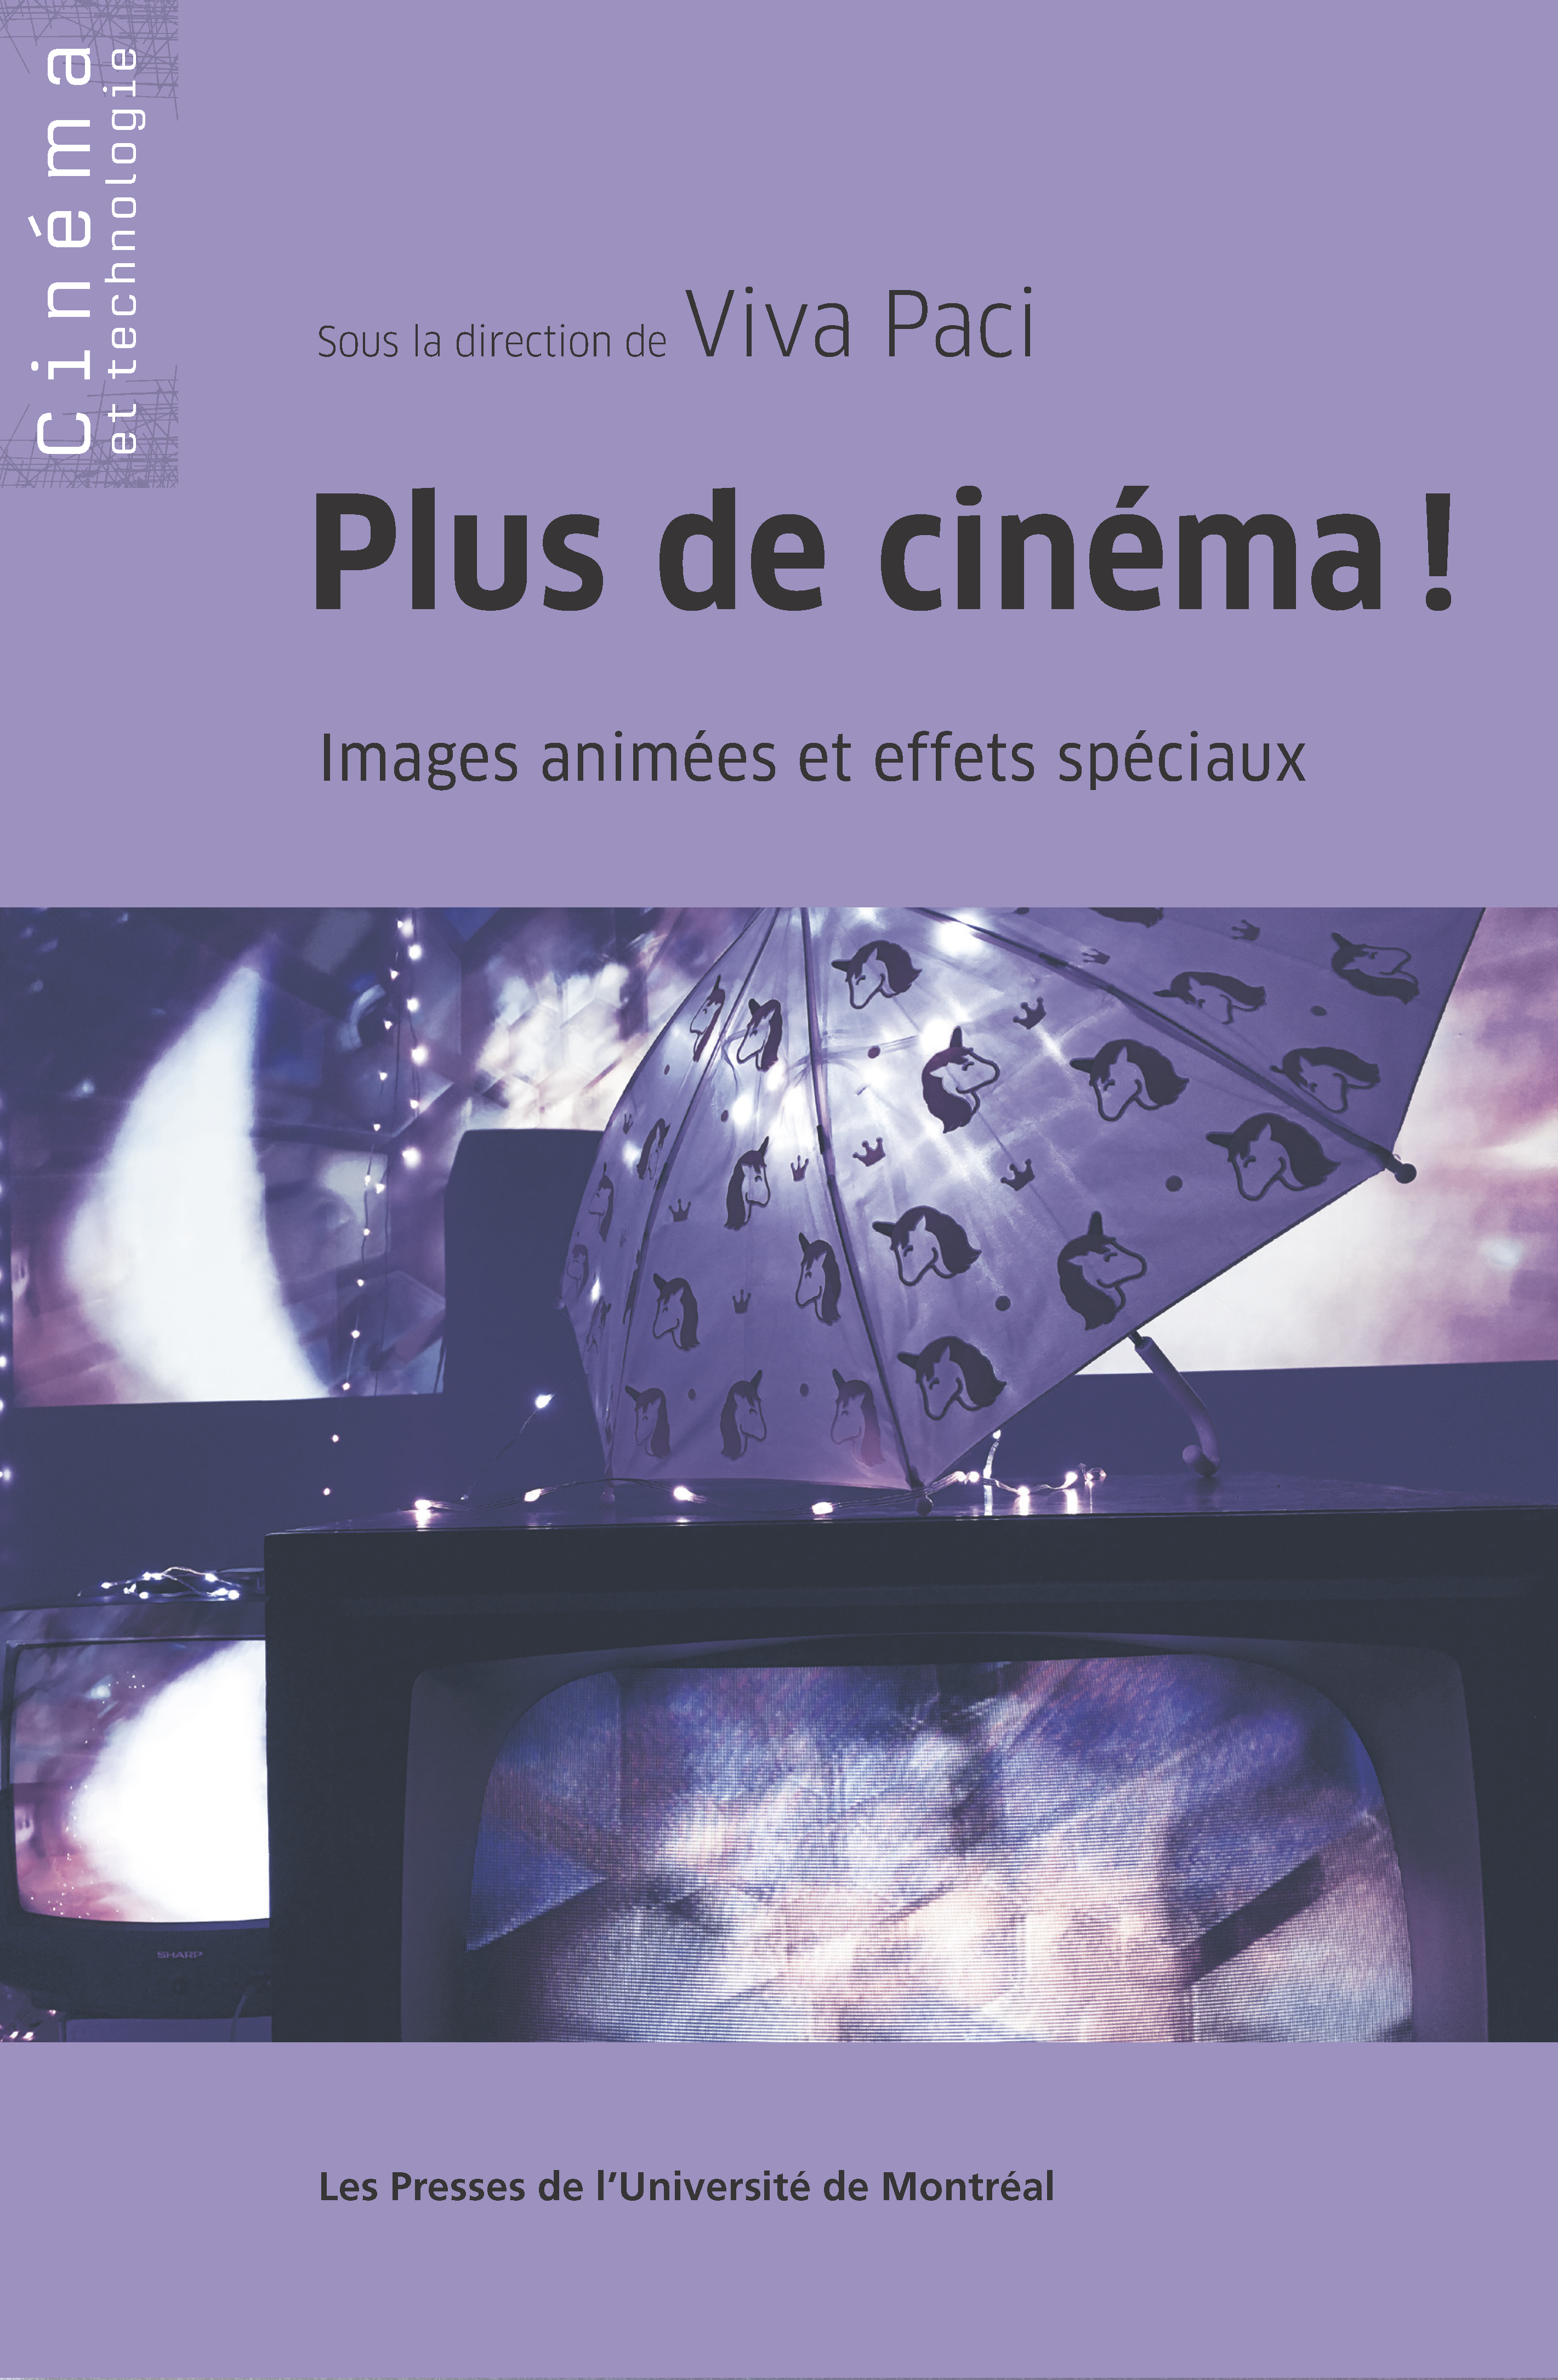 You are currently viewing Invitation au lancement de l'ouvrage Plus de cinéma !